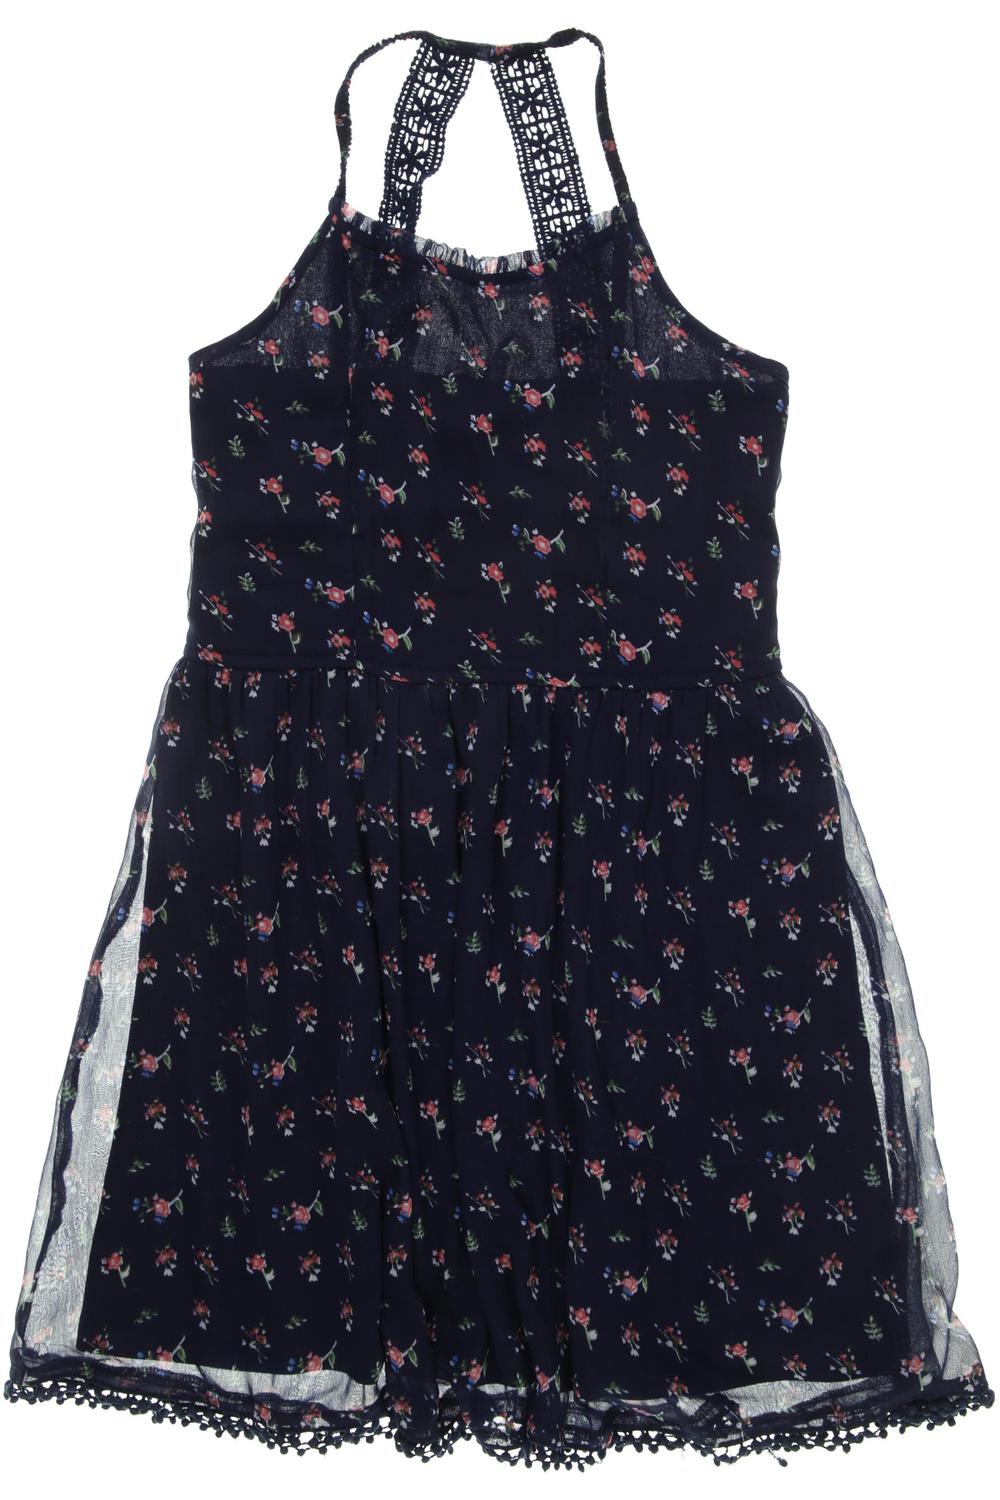 Manguun Mädchen Kleid DE 140 Second Hand kaufen | ubup